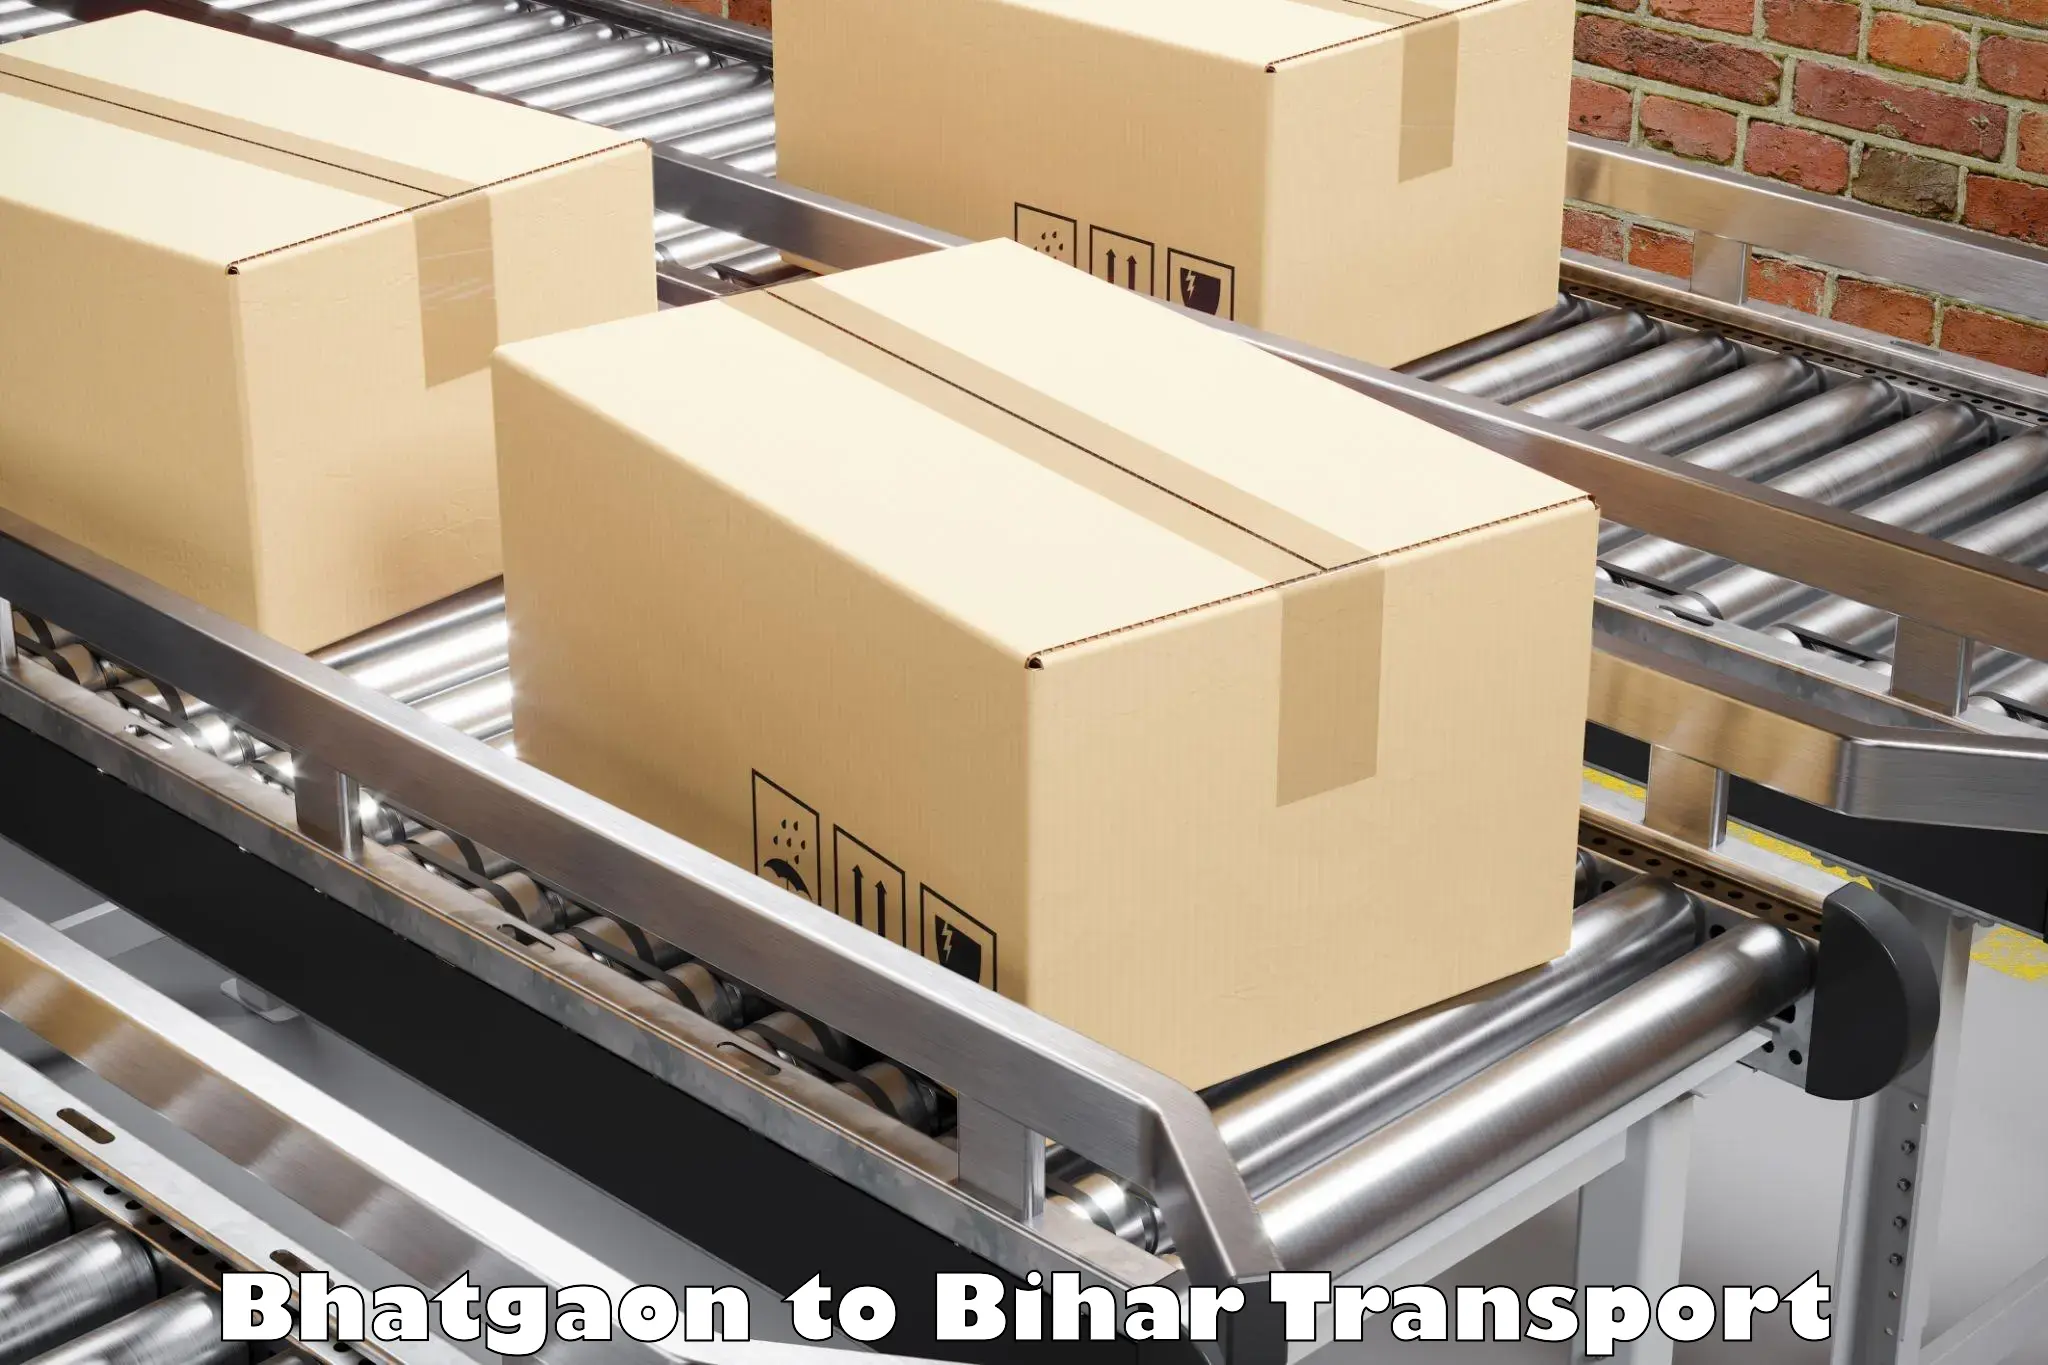 Shipping partner Bhatgaon to Bankipore